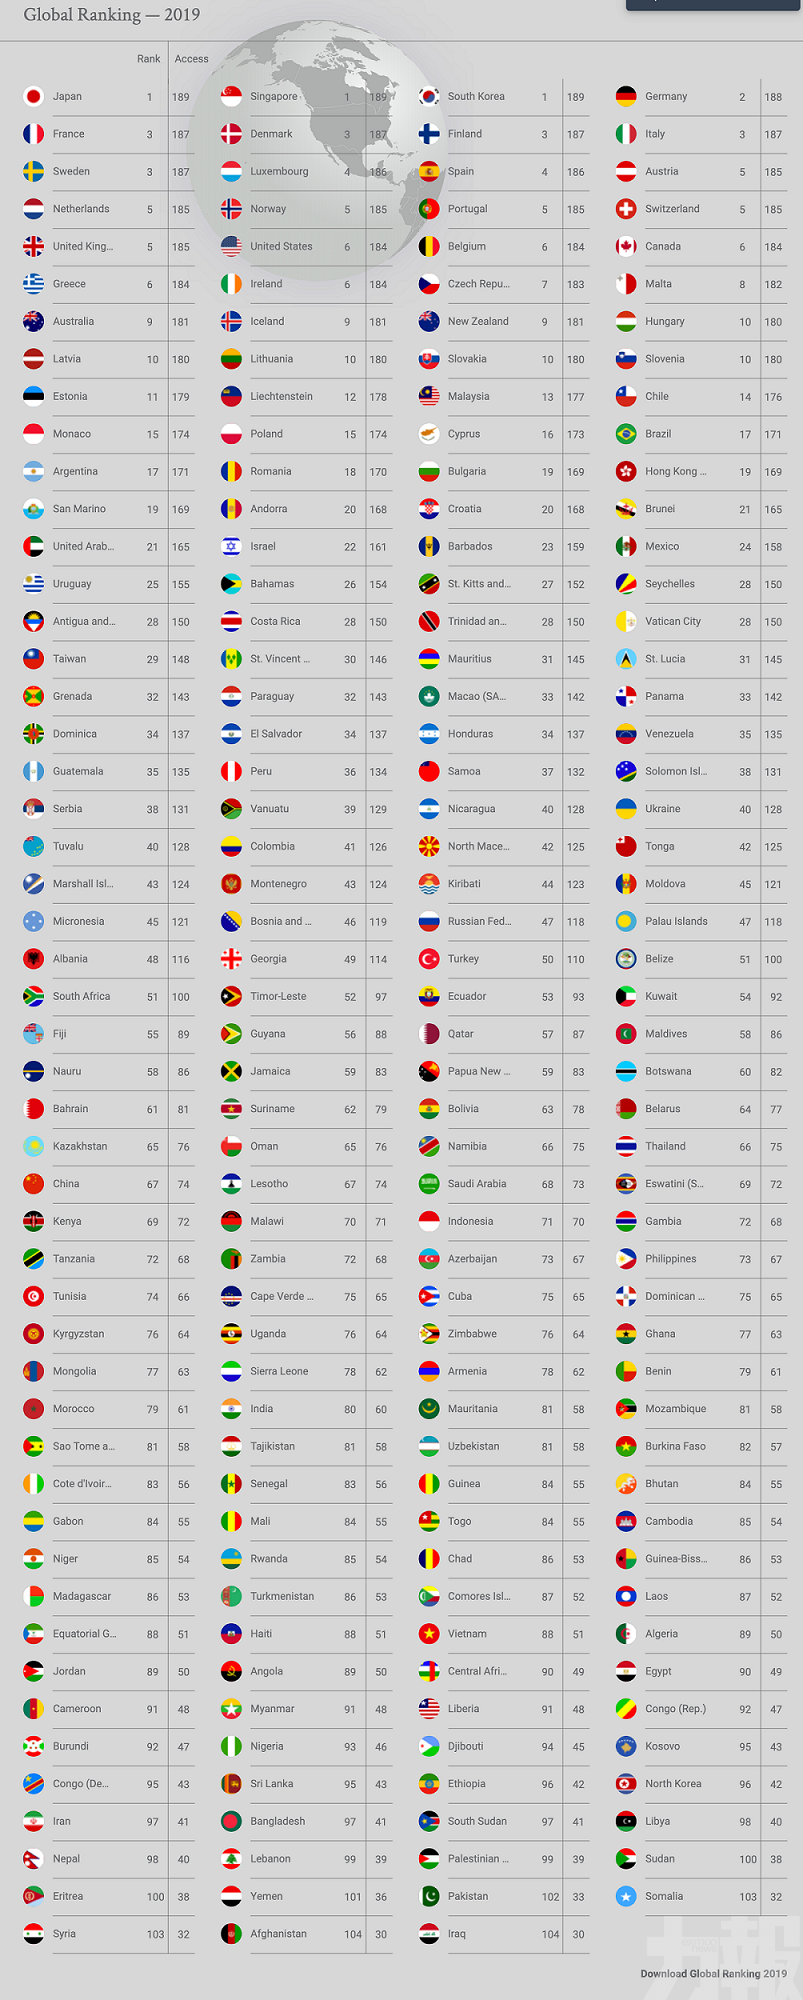 澳門獲142個國家免簽 排第33位